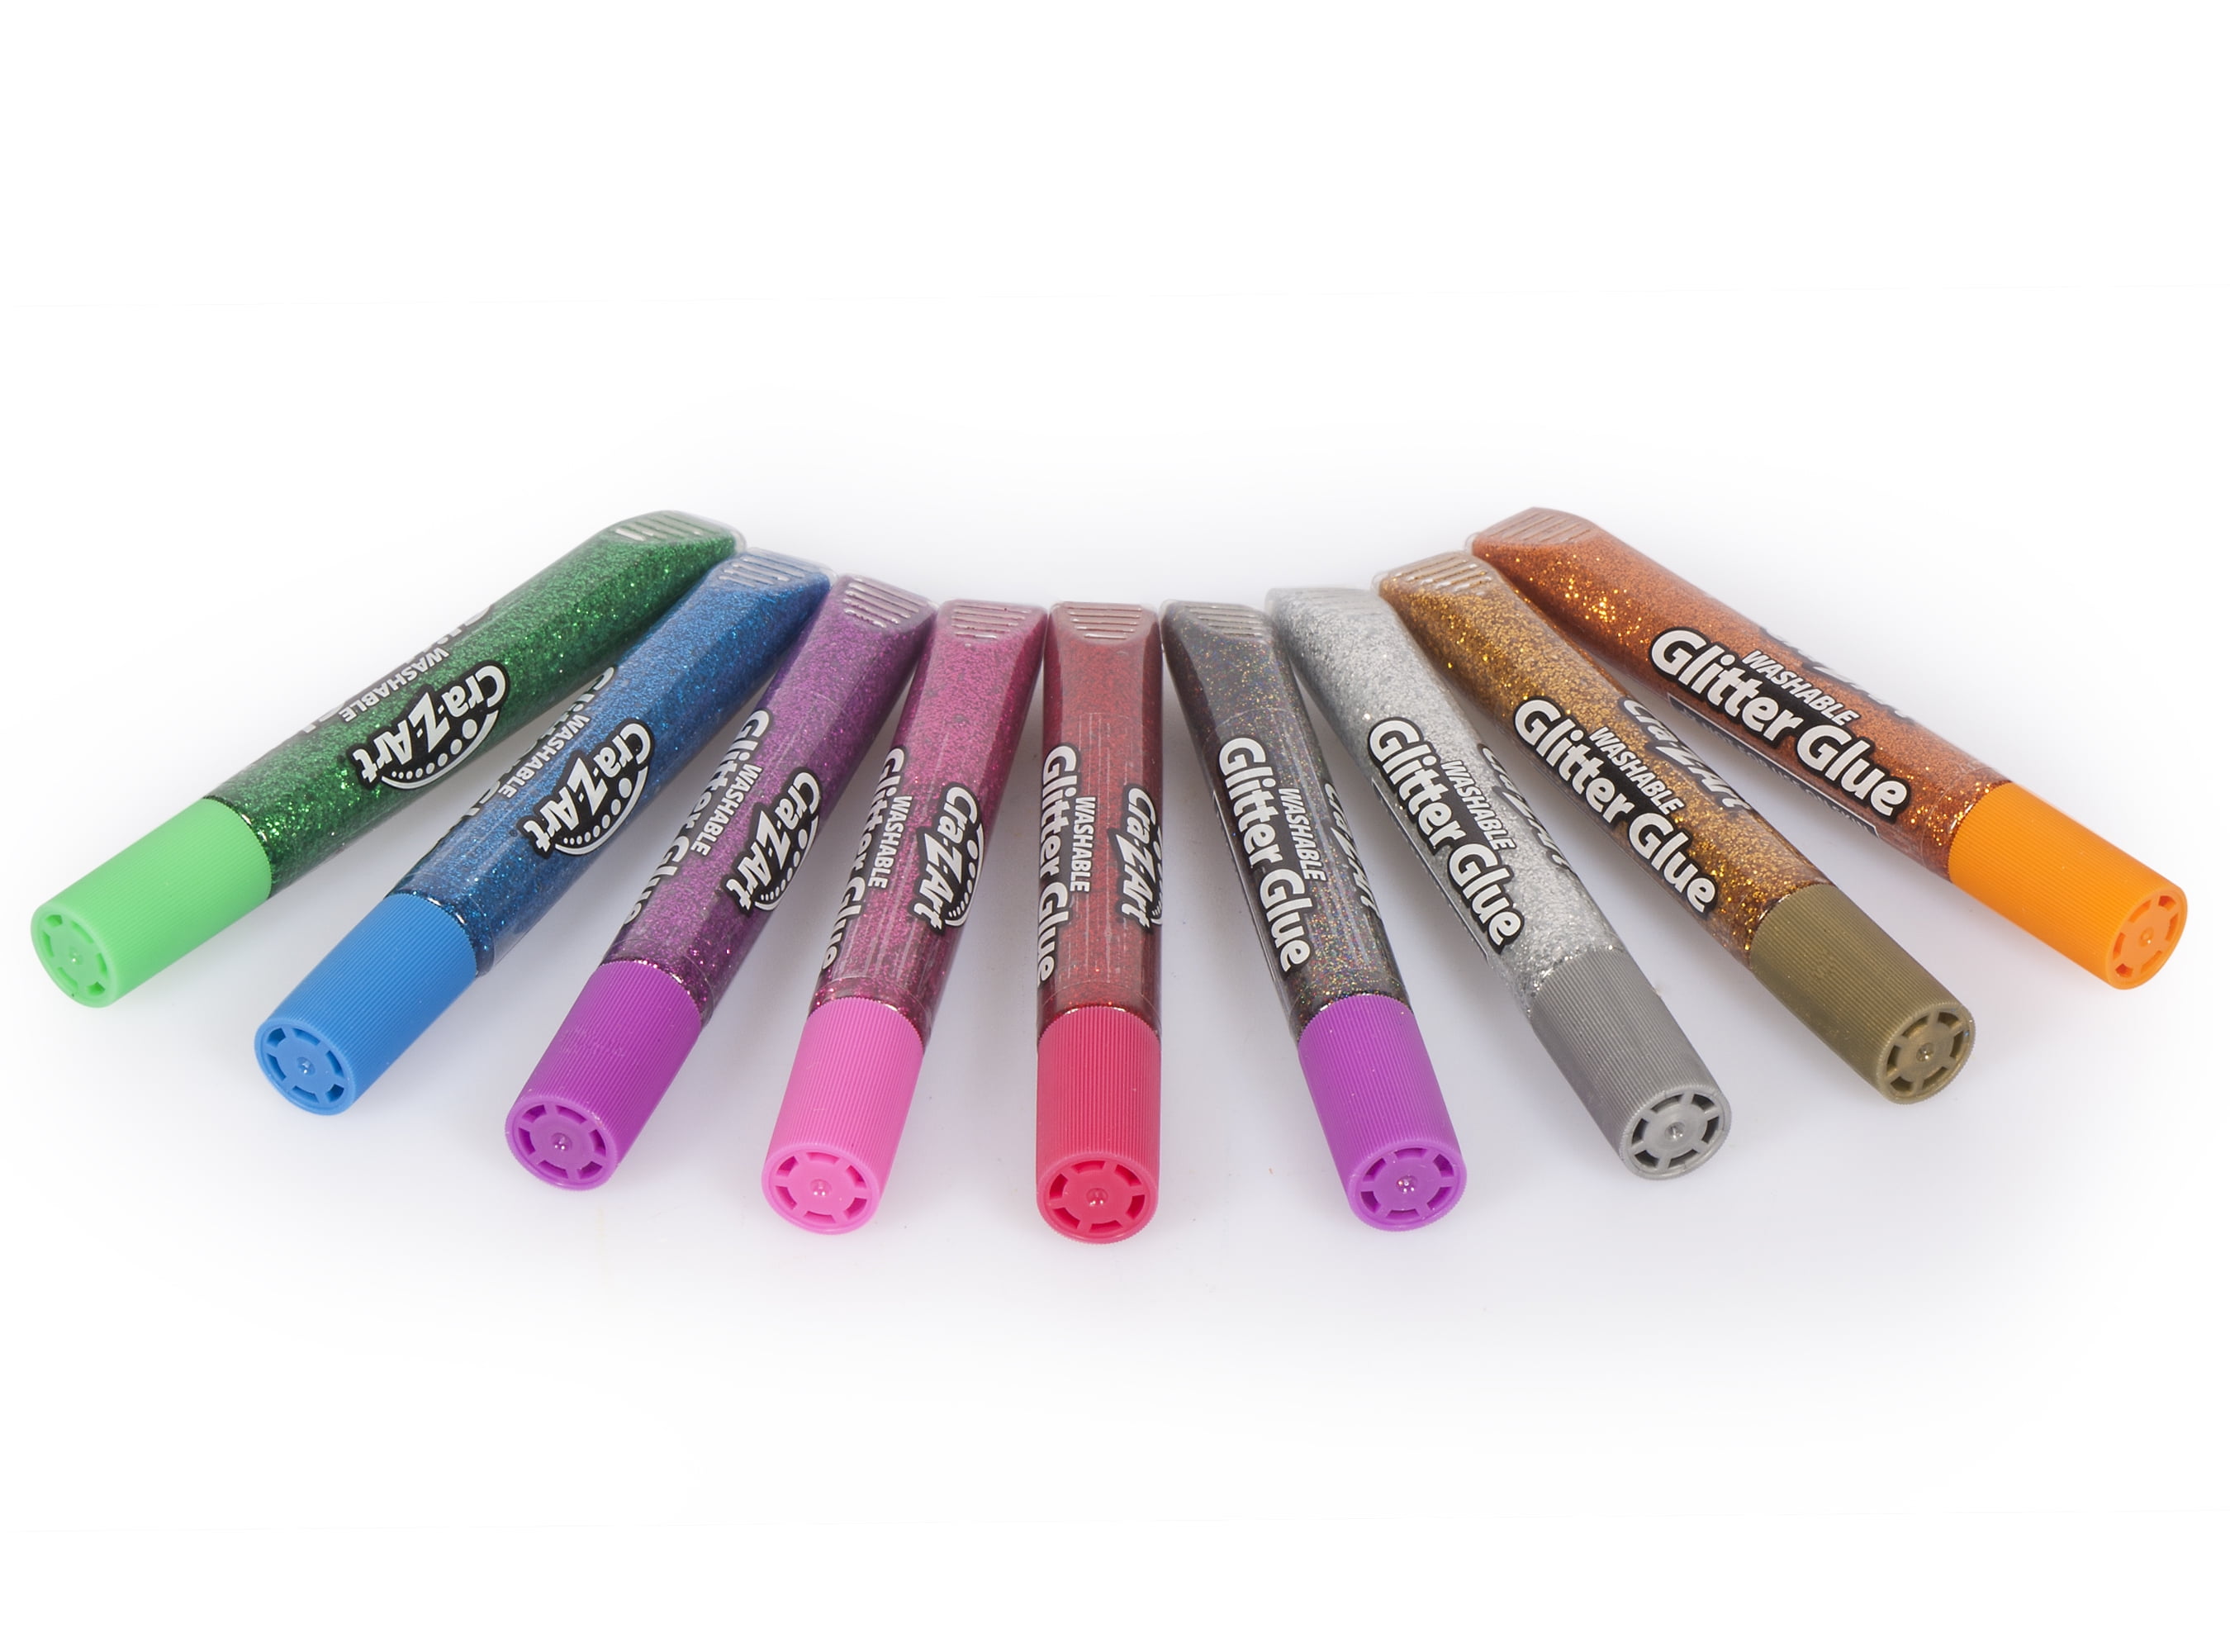 Crayola Glitter WashableRemovable Craft Glue, 0.35 oz., White (69-3527)